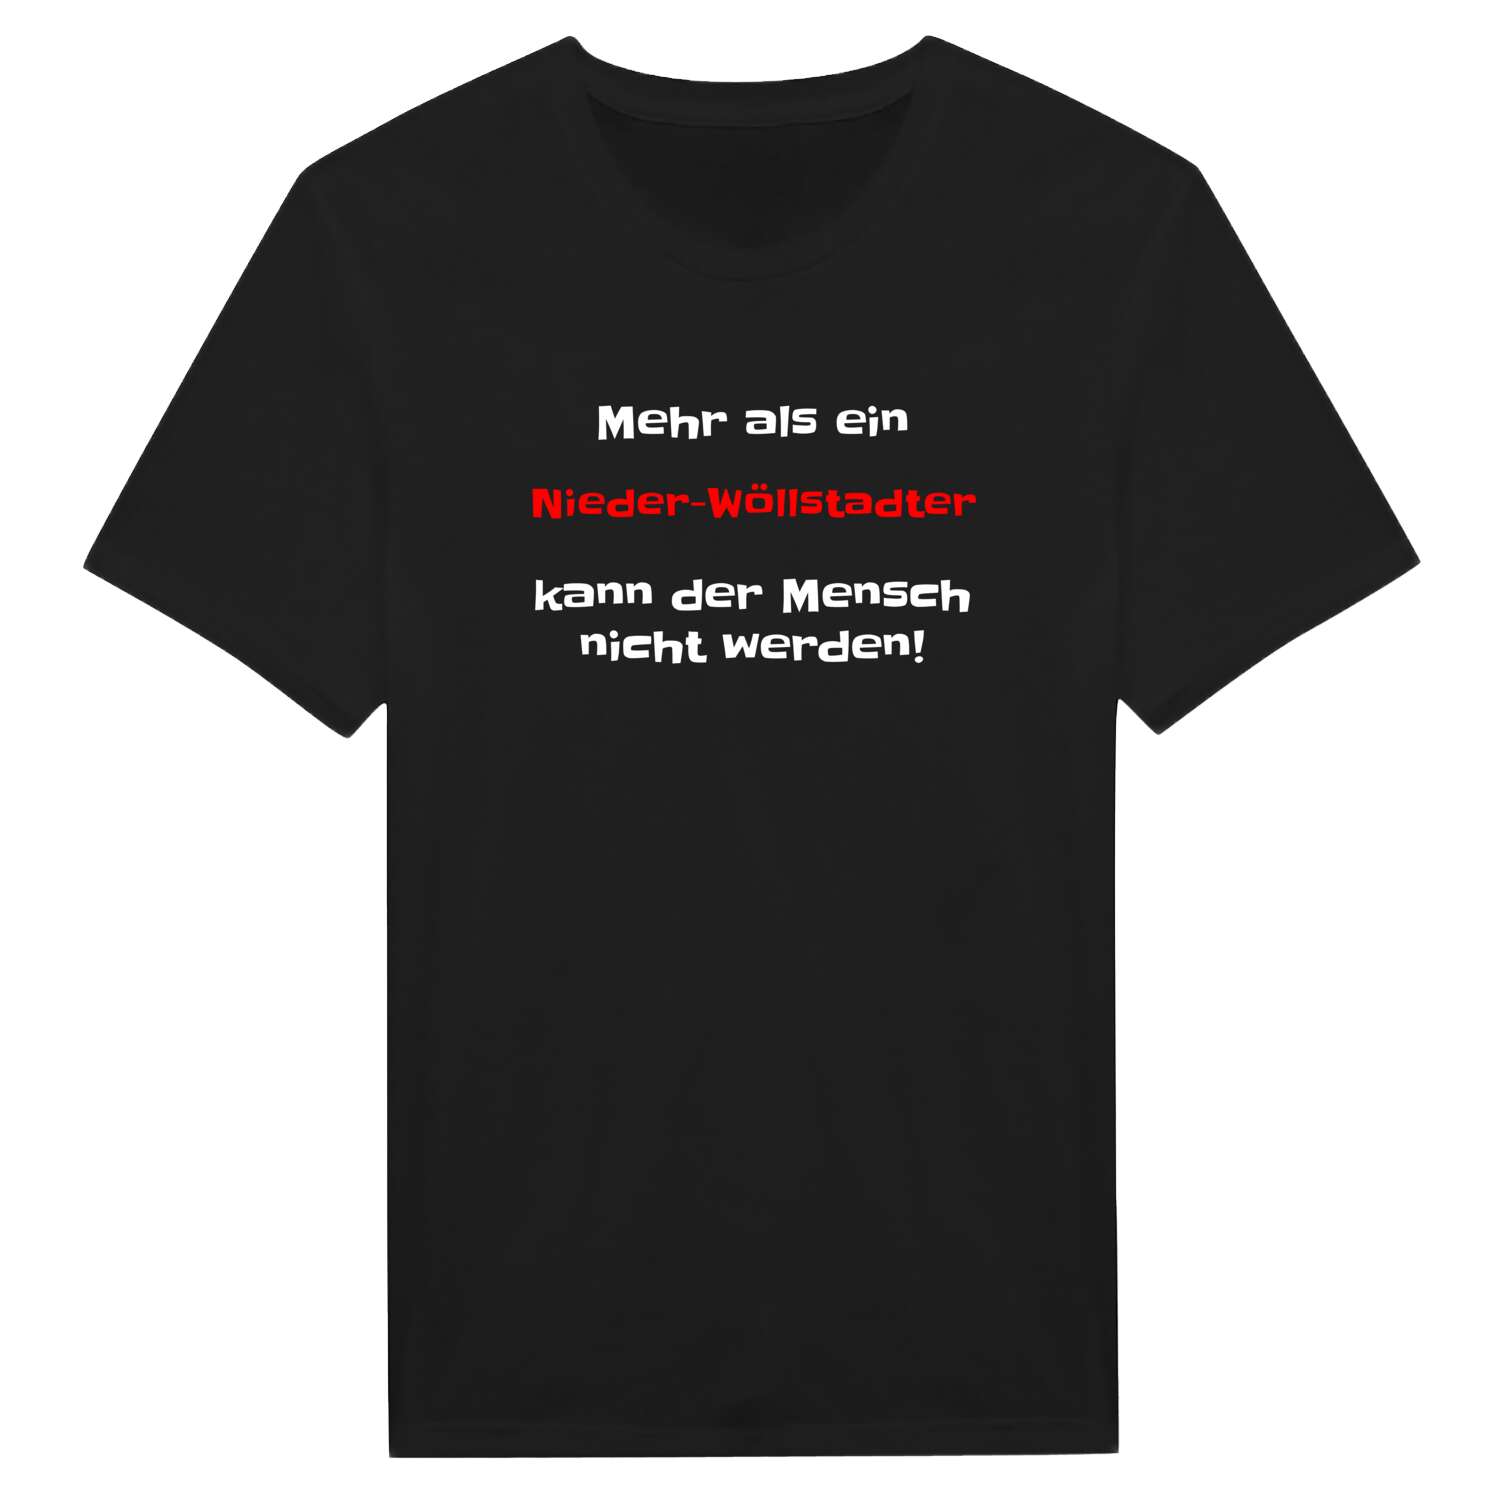 Nieder-Wöllstadt T-Shirt »Mehr als ein«